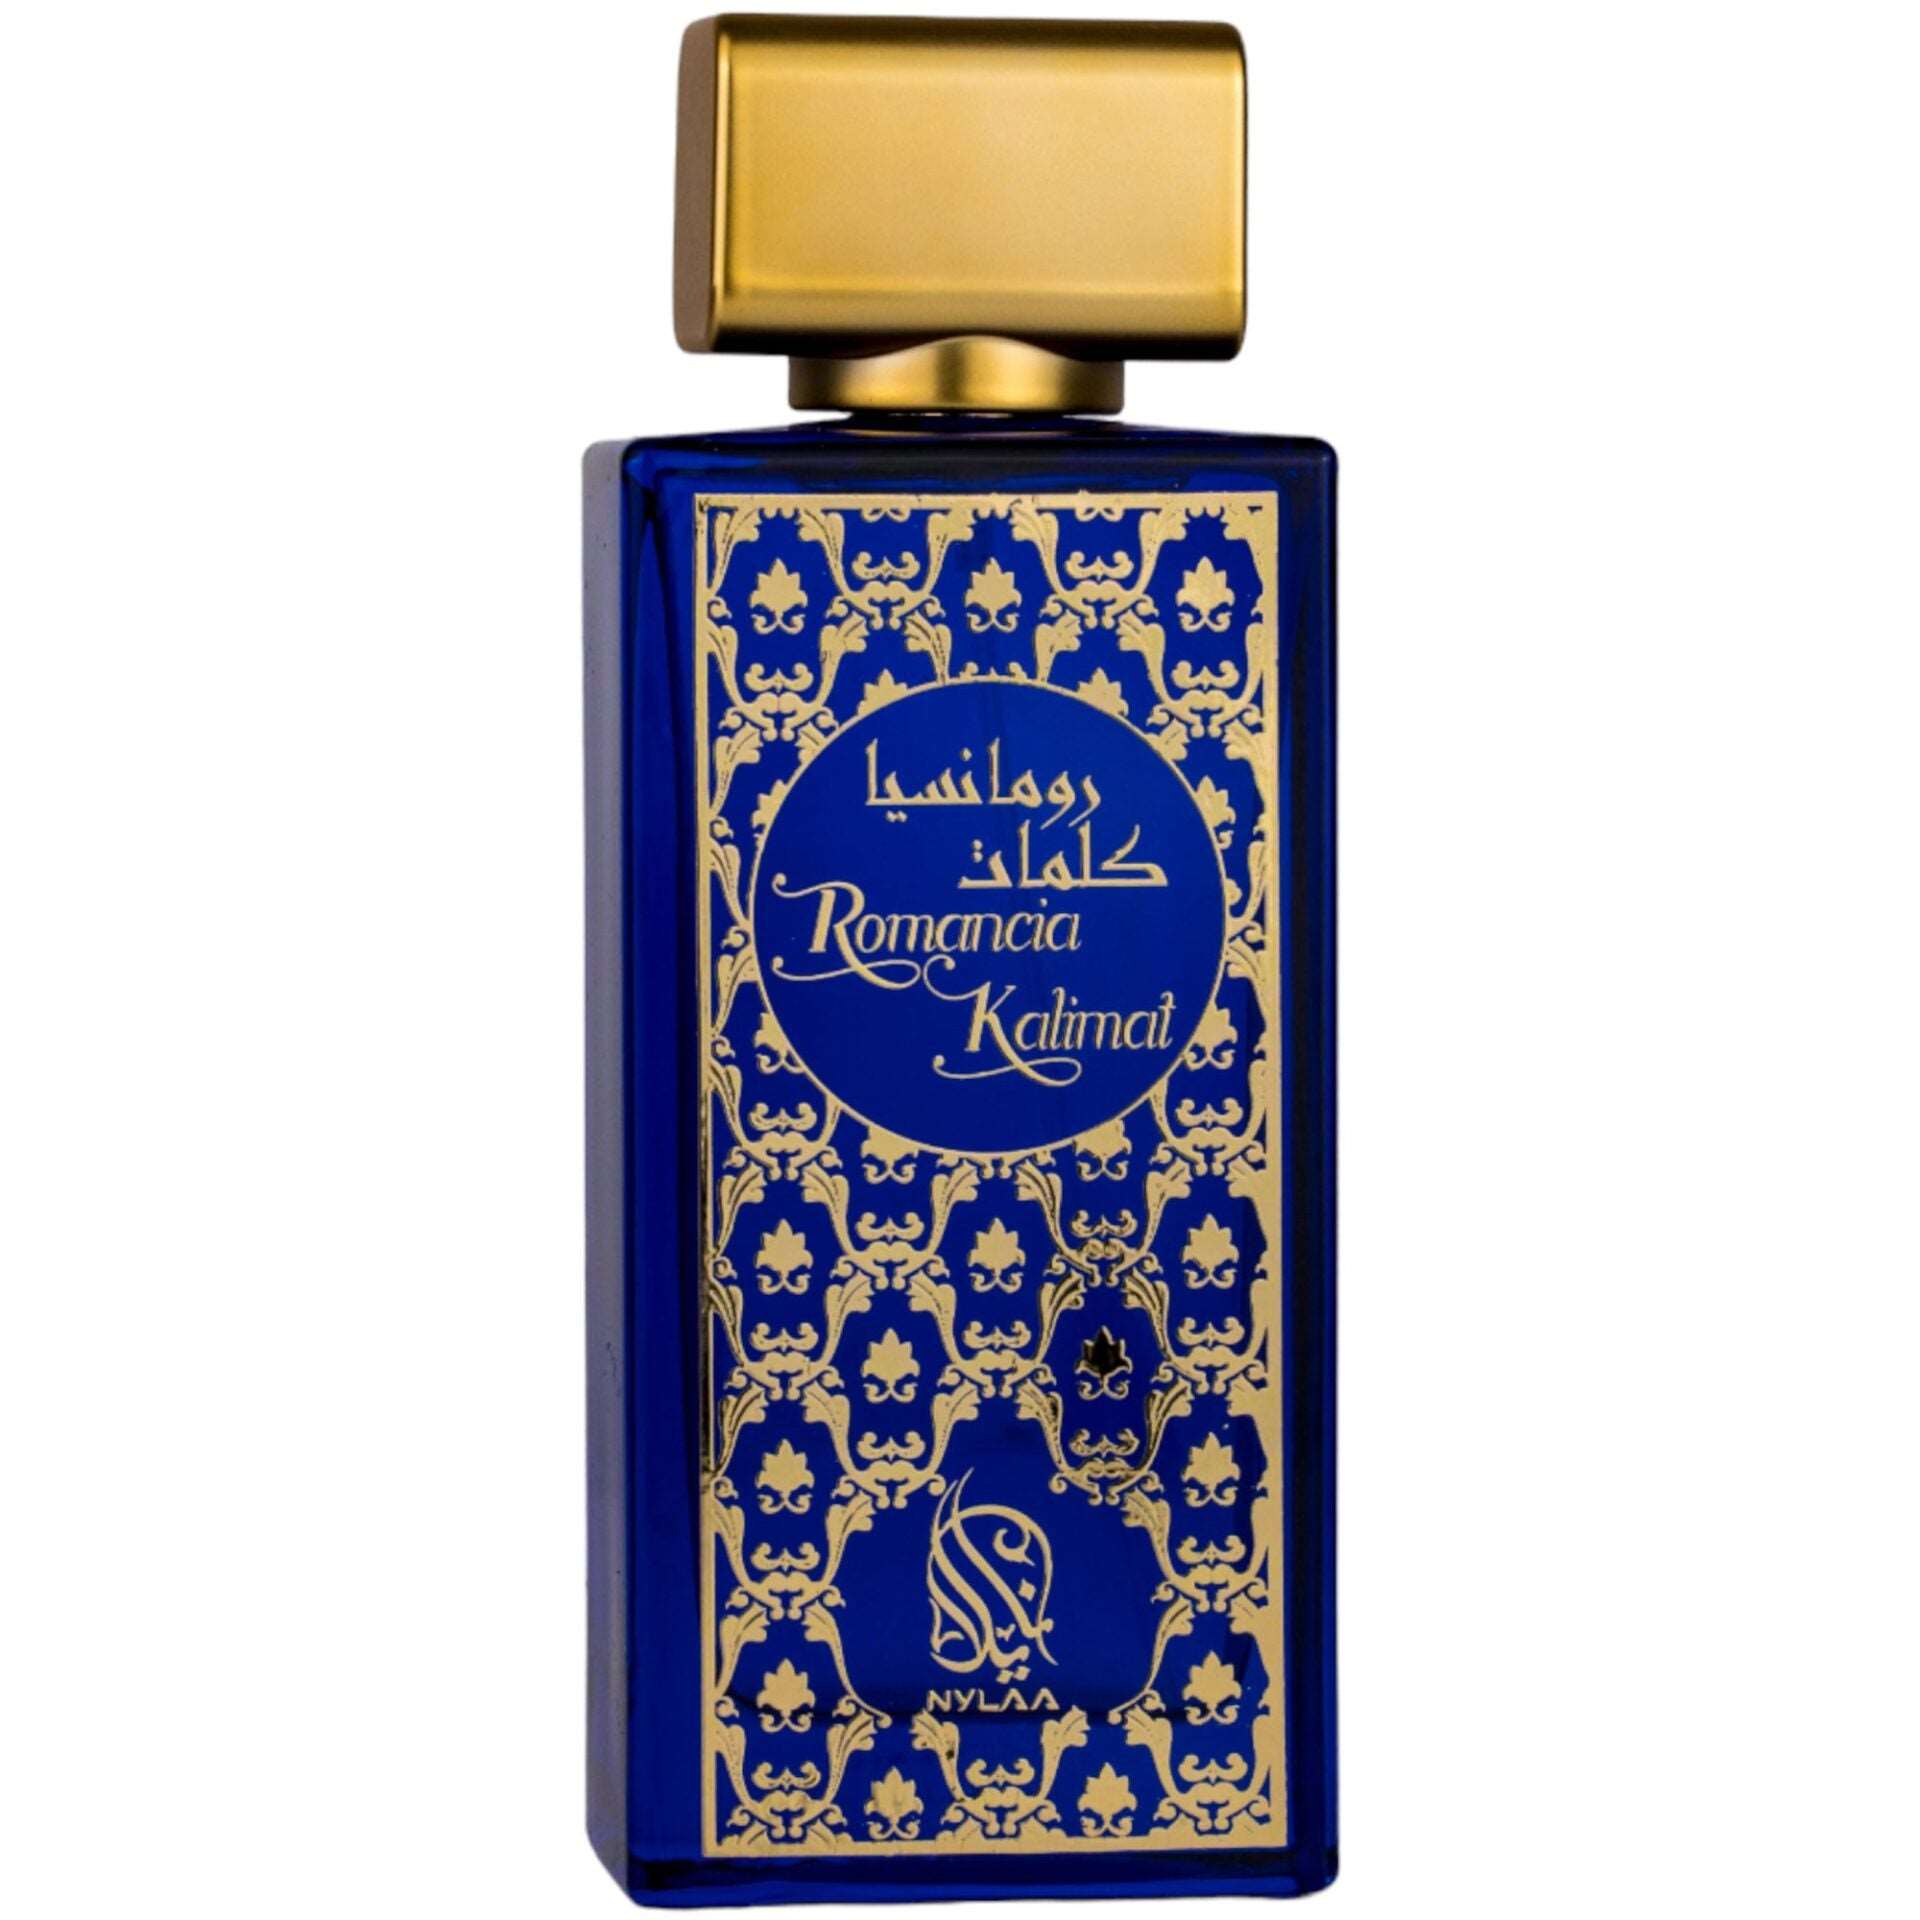 Romancia Kalimat 100ml - Perfume de colección Dubai